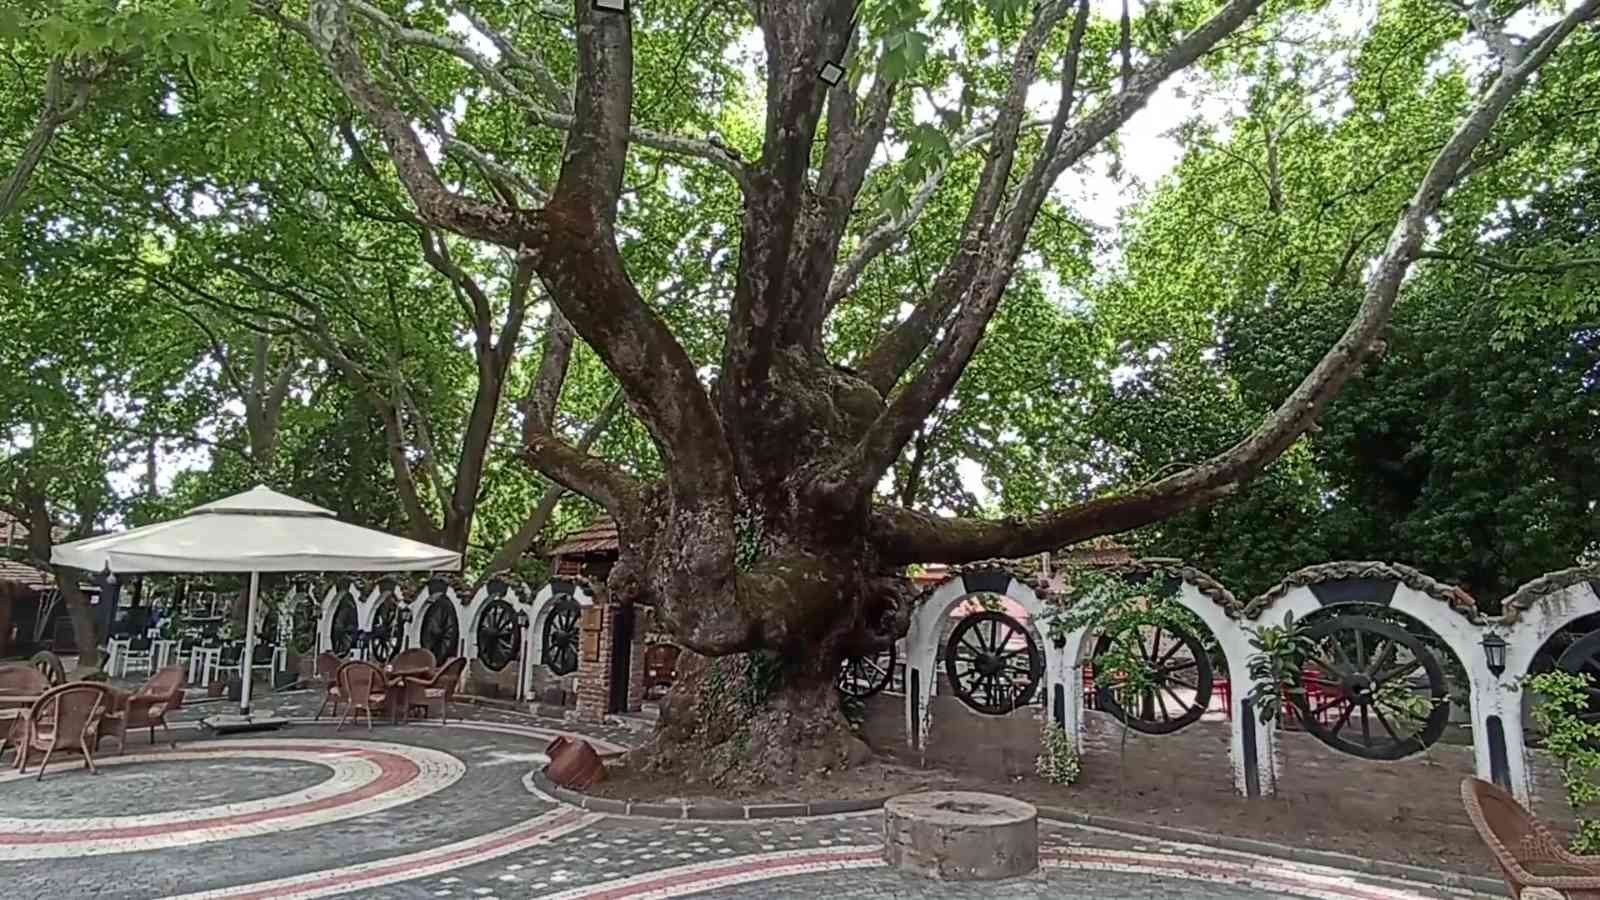 Balıkesir’in Edremit ilçesinde Kazdağları eteklerinde yer alan tescilli anıt ağaçlar turizme kazandırılıyor. Son olarak Manastırhan’da bulunan ...